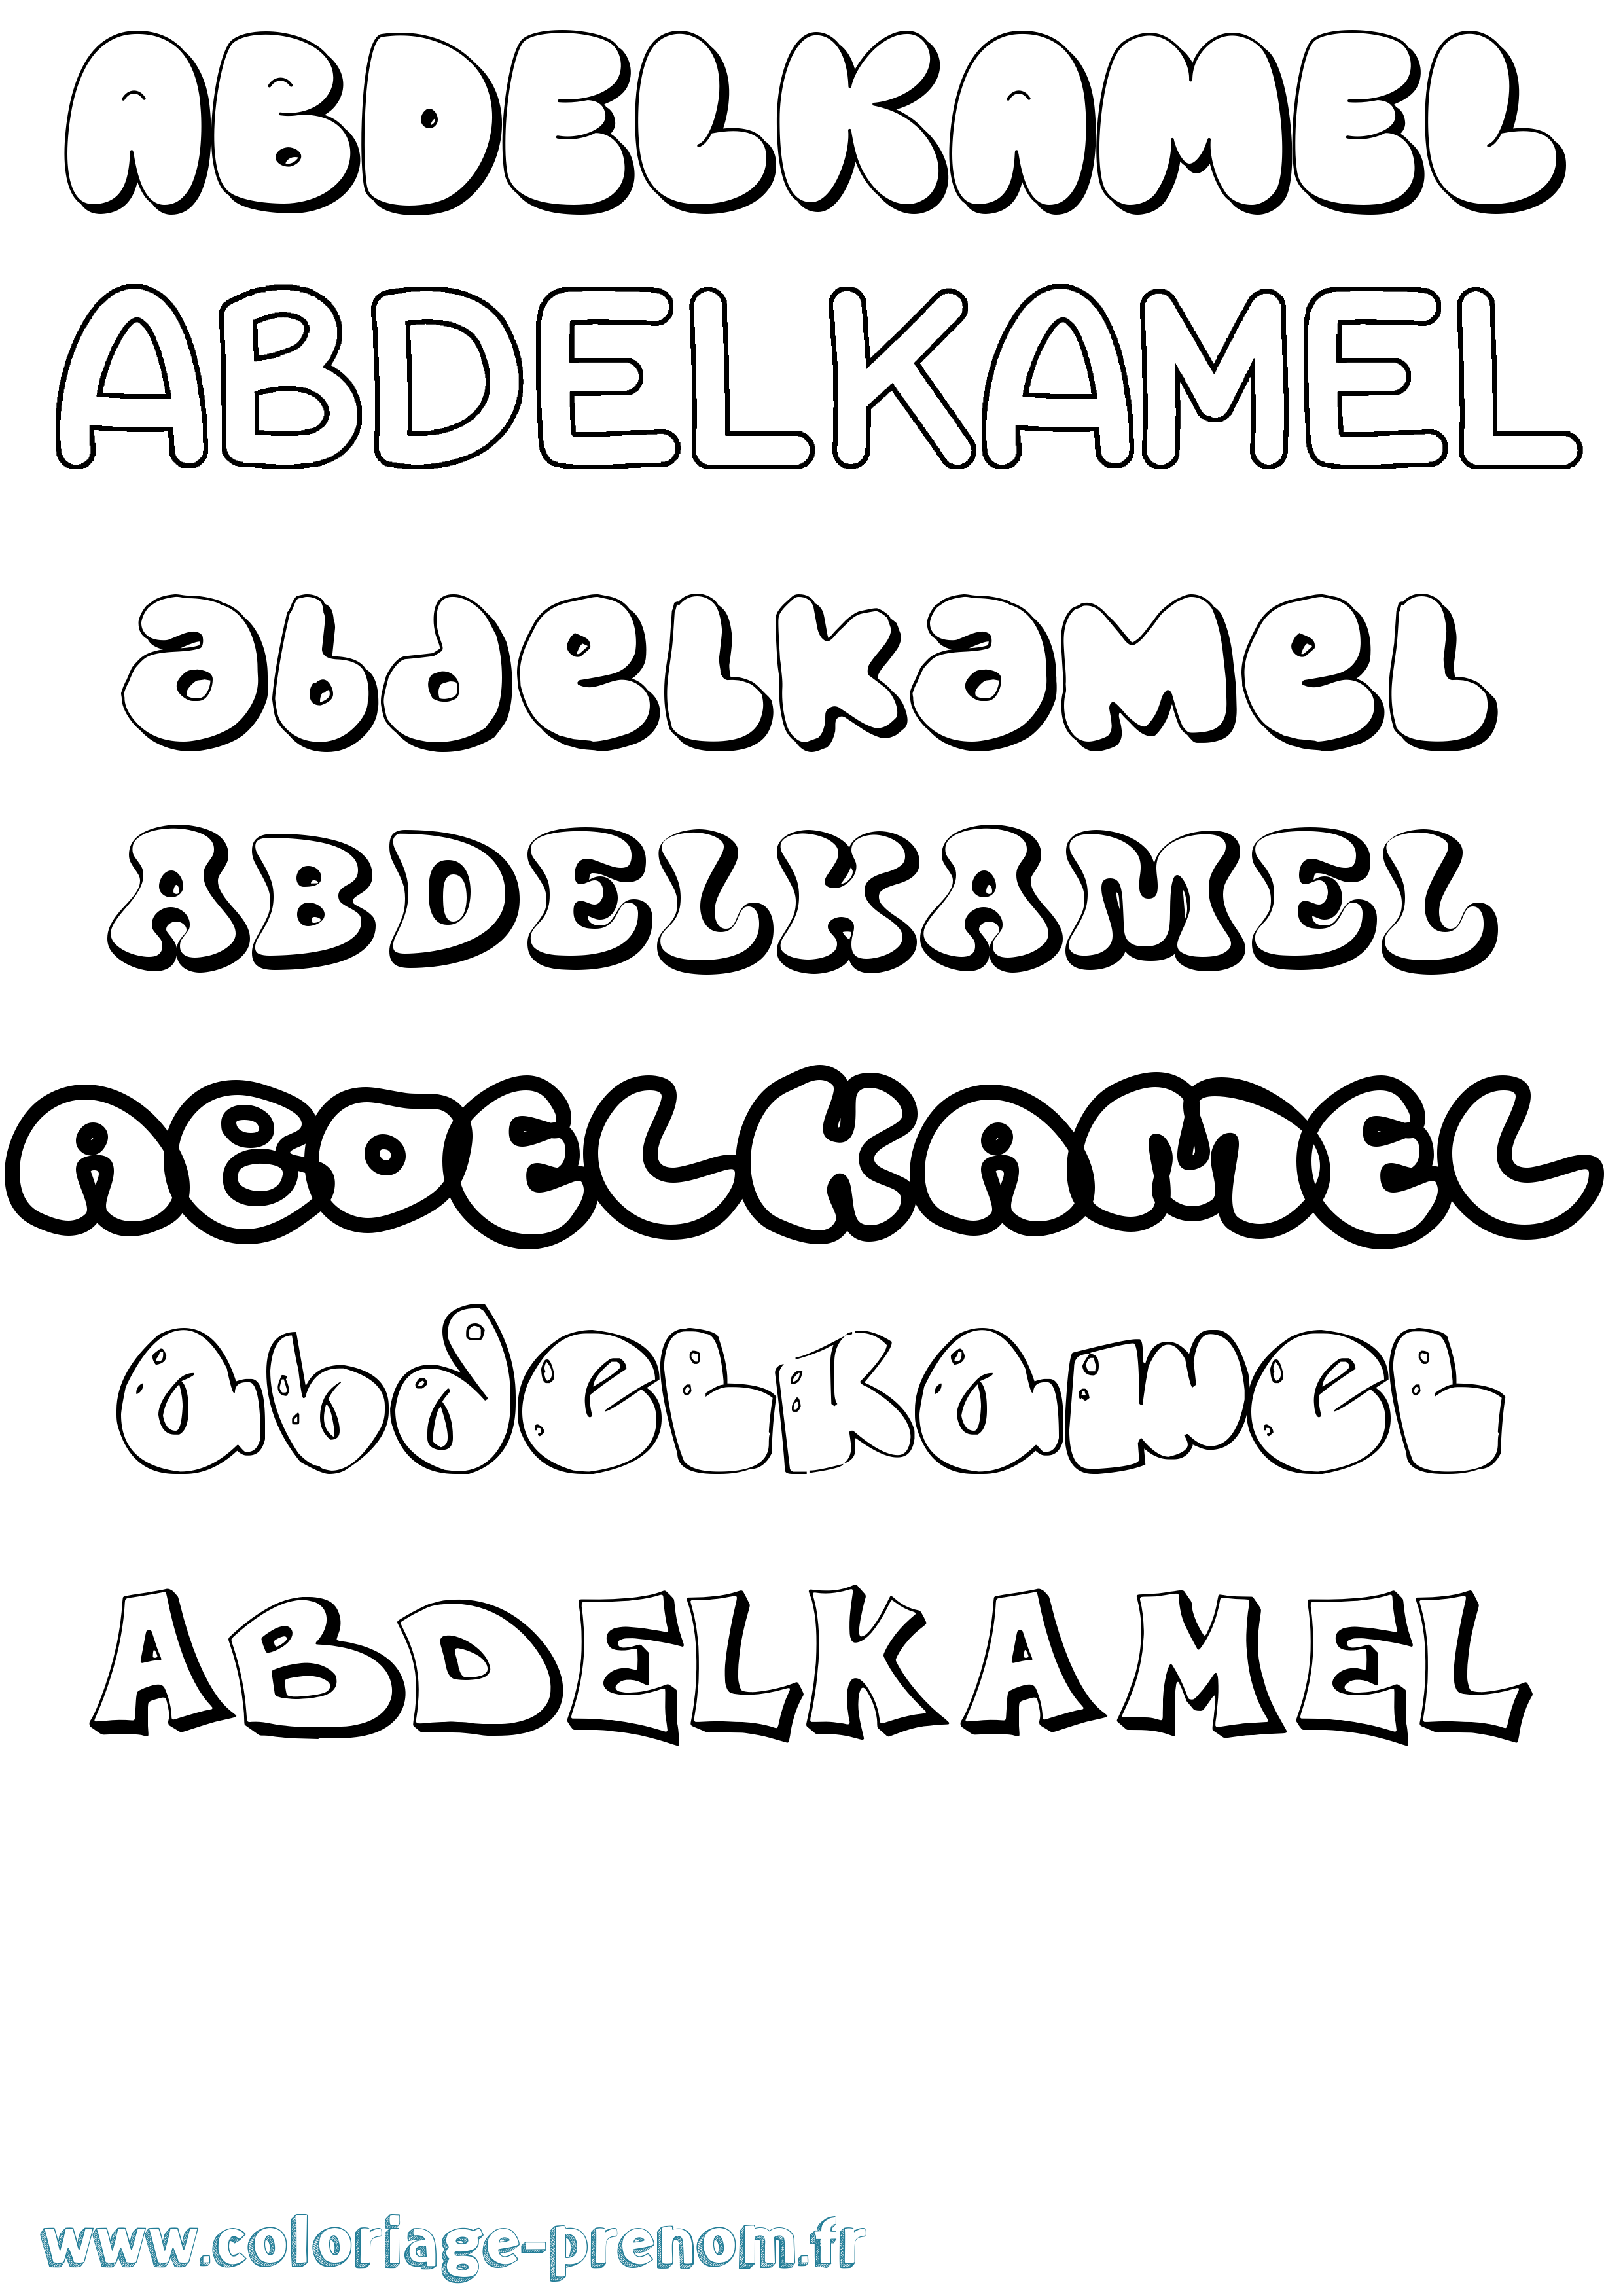 Coloriage prénom Abdelkamel Bubble